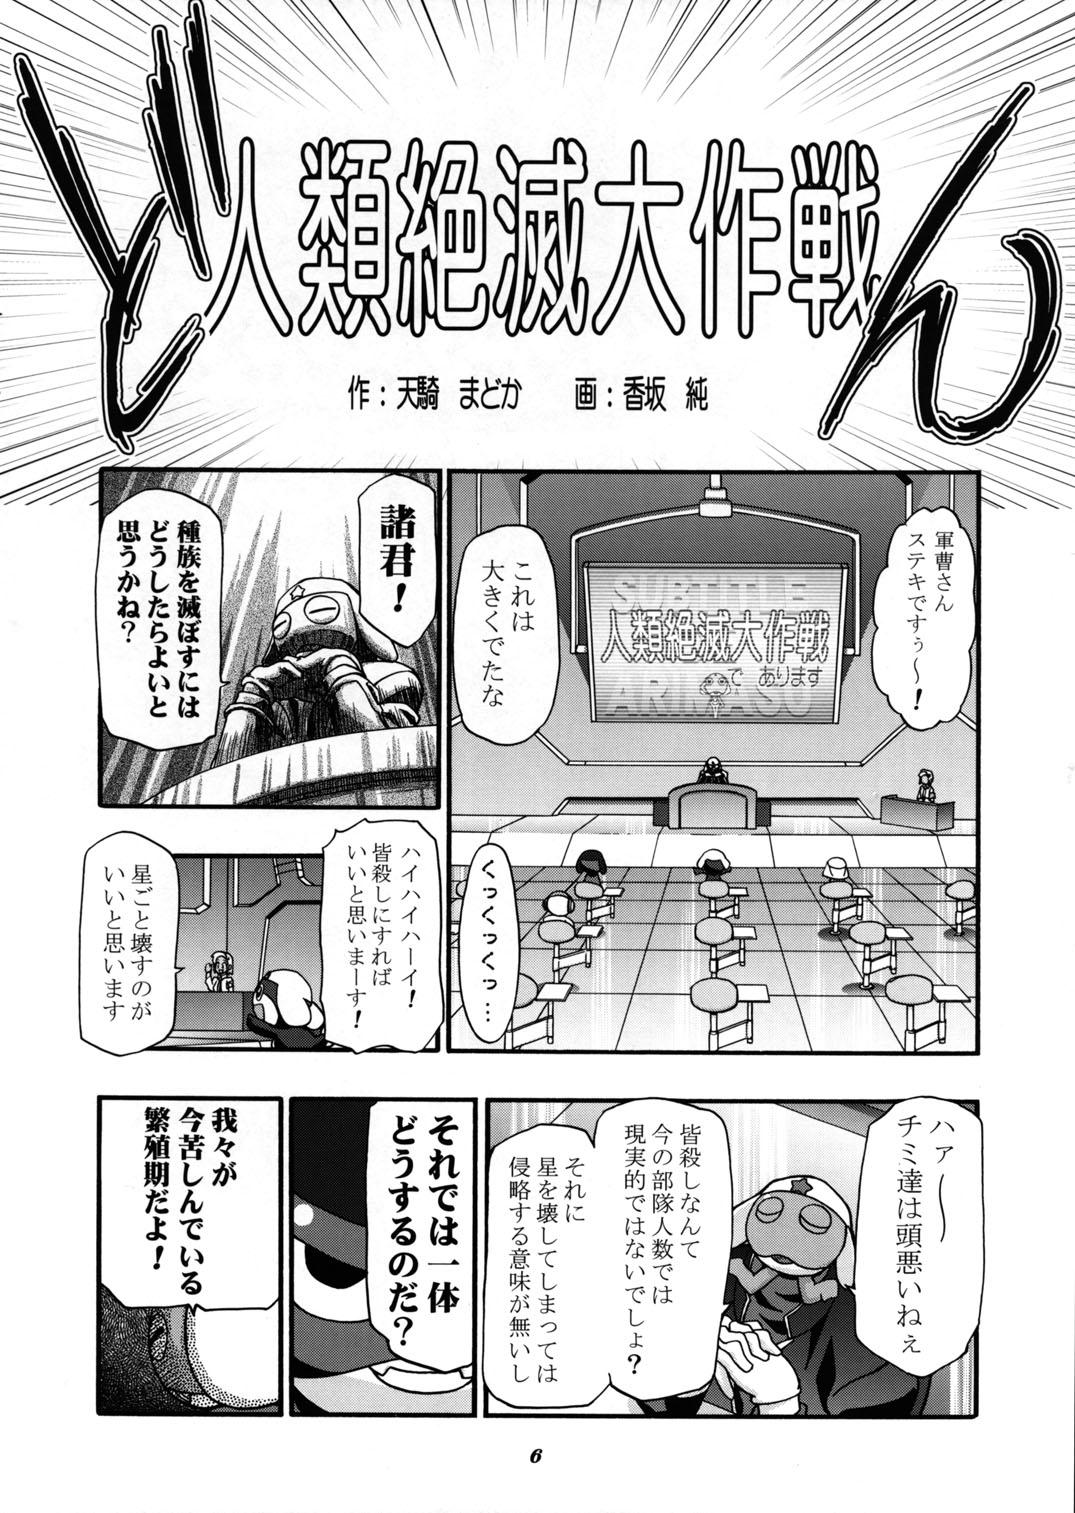 Two Aki Momo - Autumn Peach - Keroro gunsou Best Blowjob Ever - Page 6